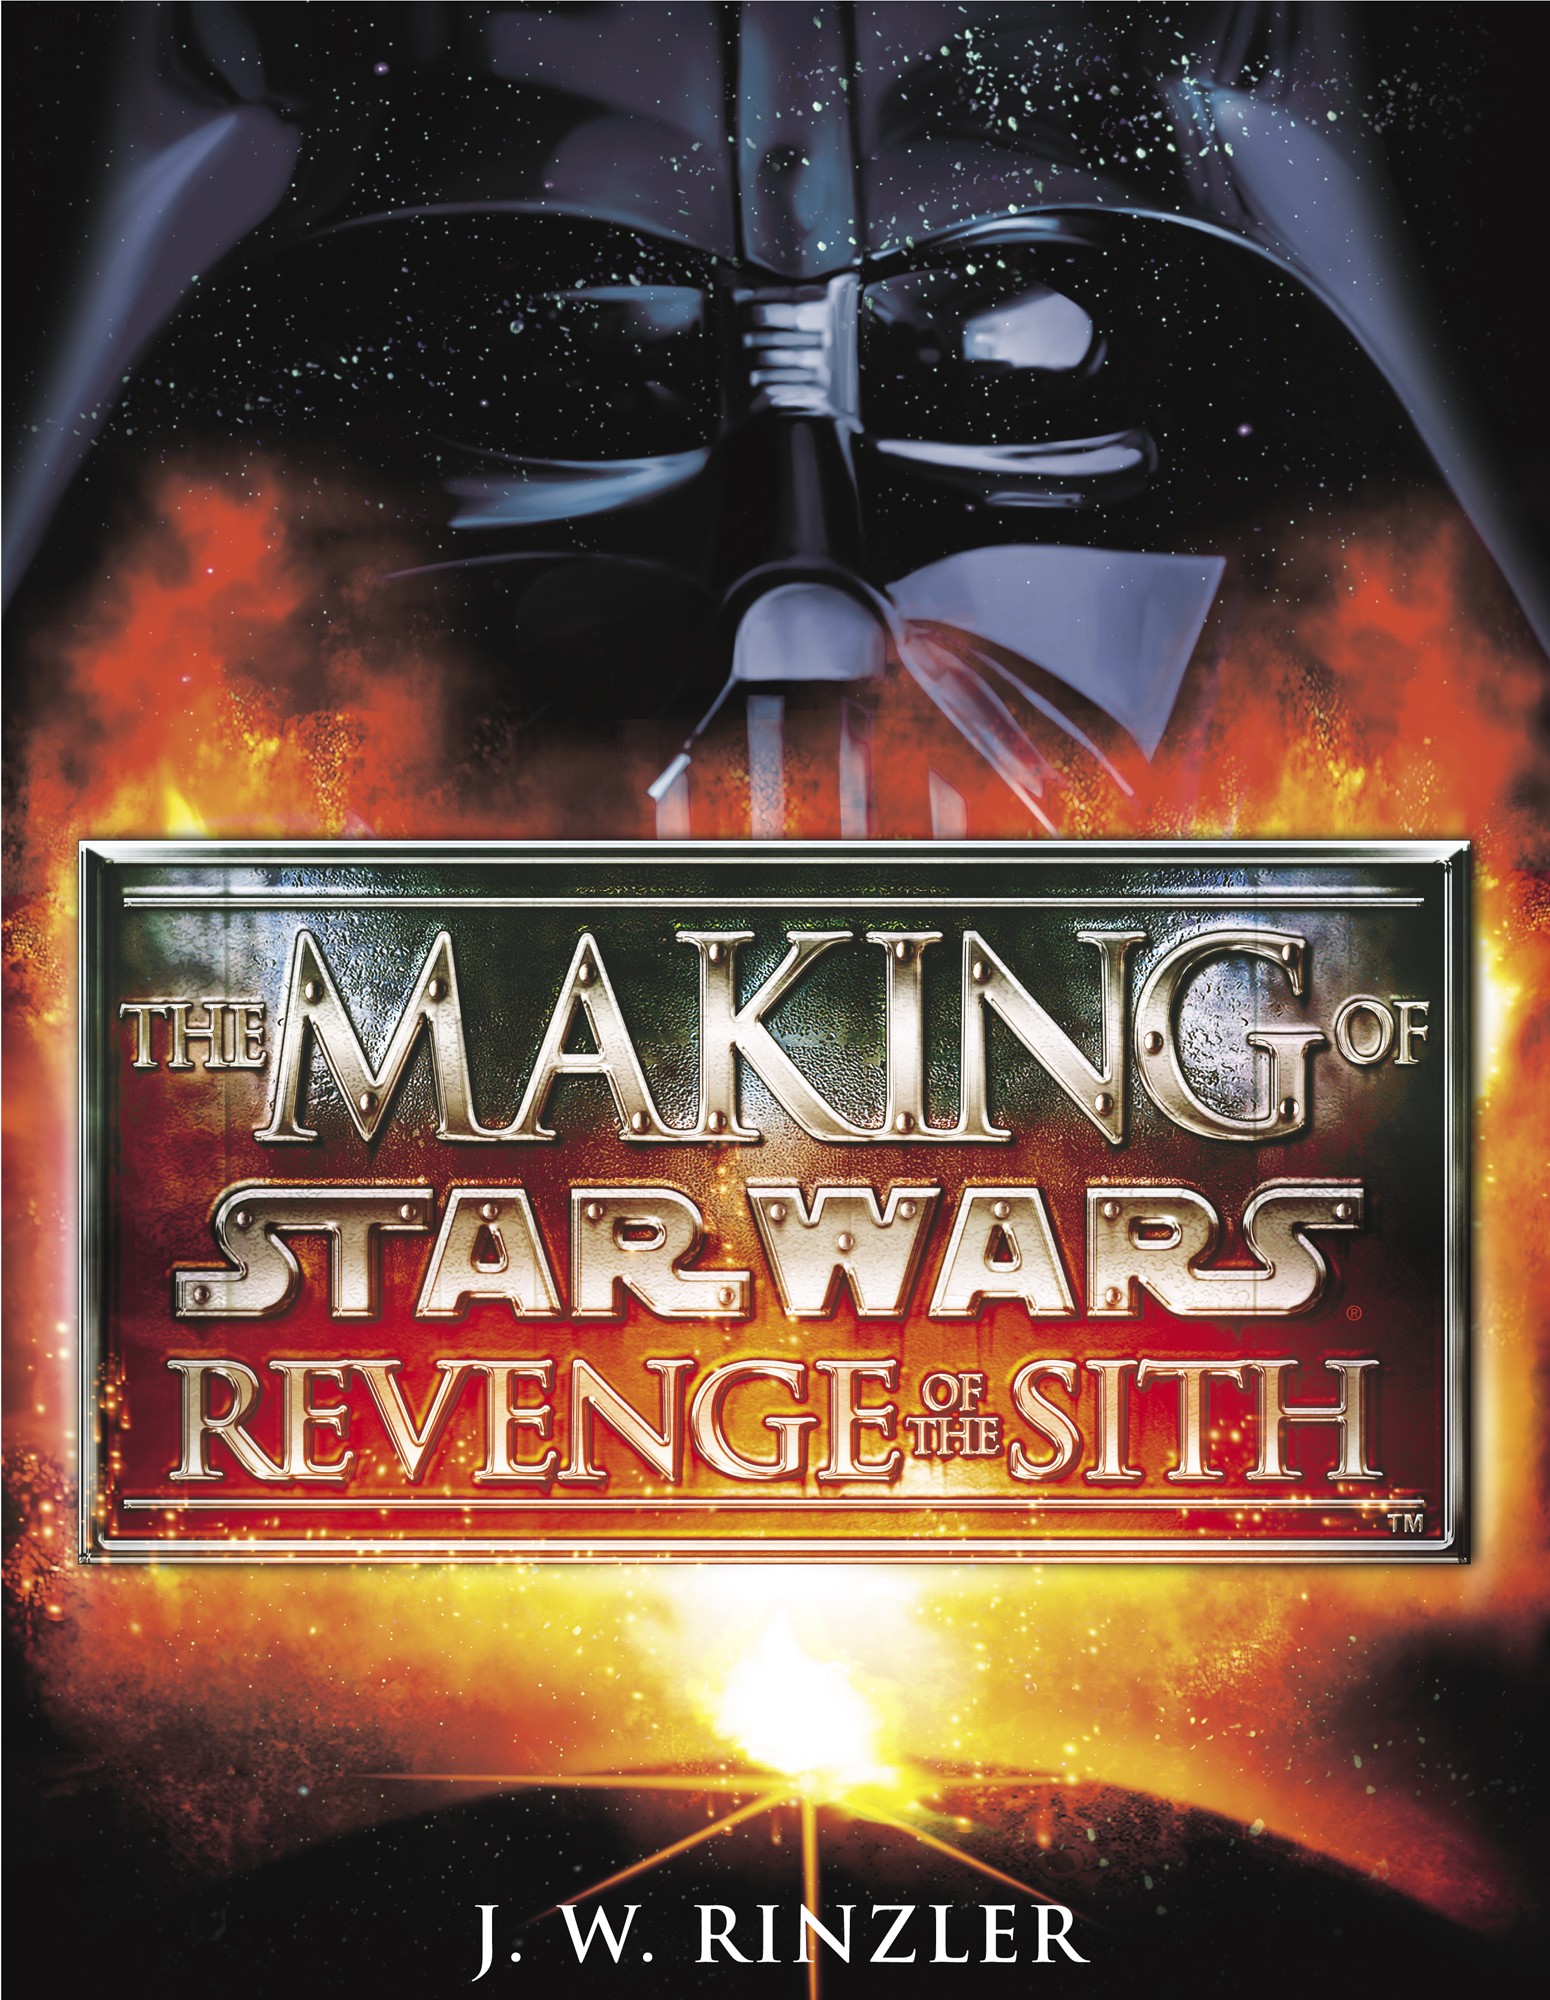 Star Wars couloir Base Stand partie pour la revanche des Sith revenge of the sith 2005